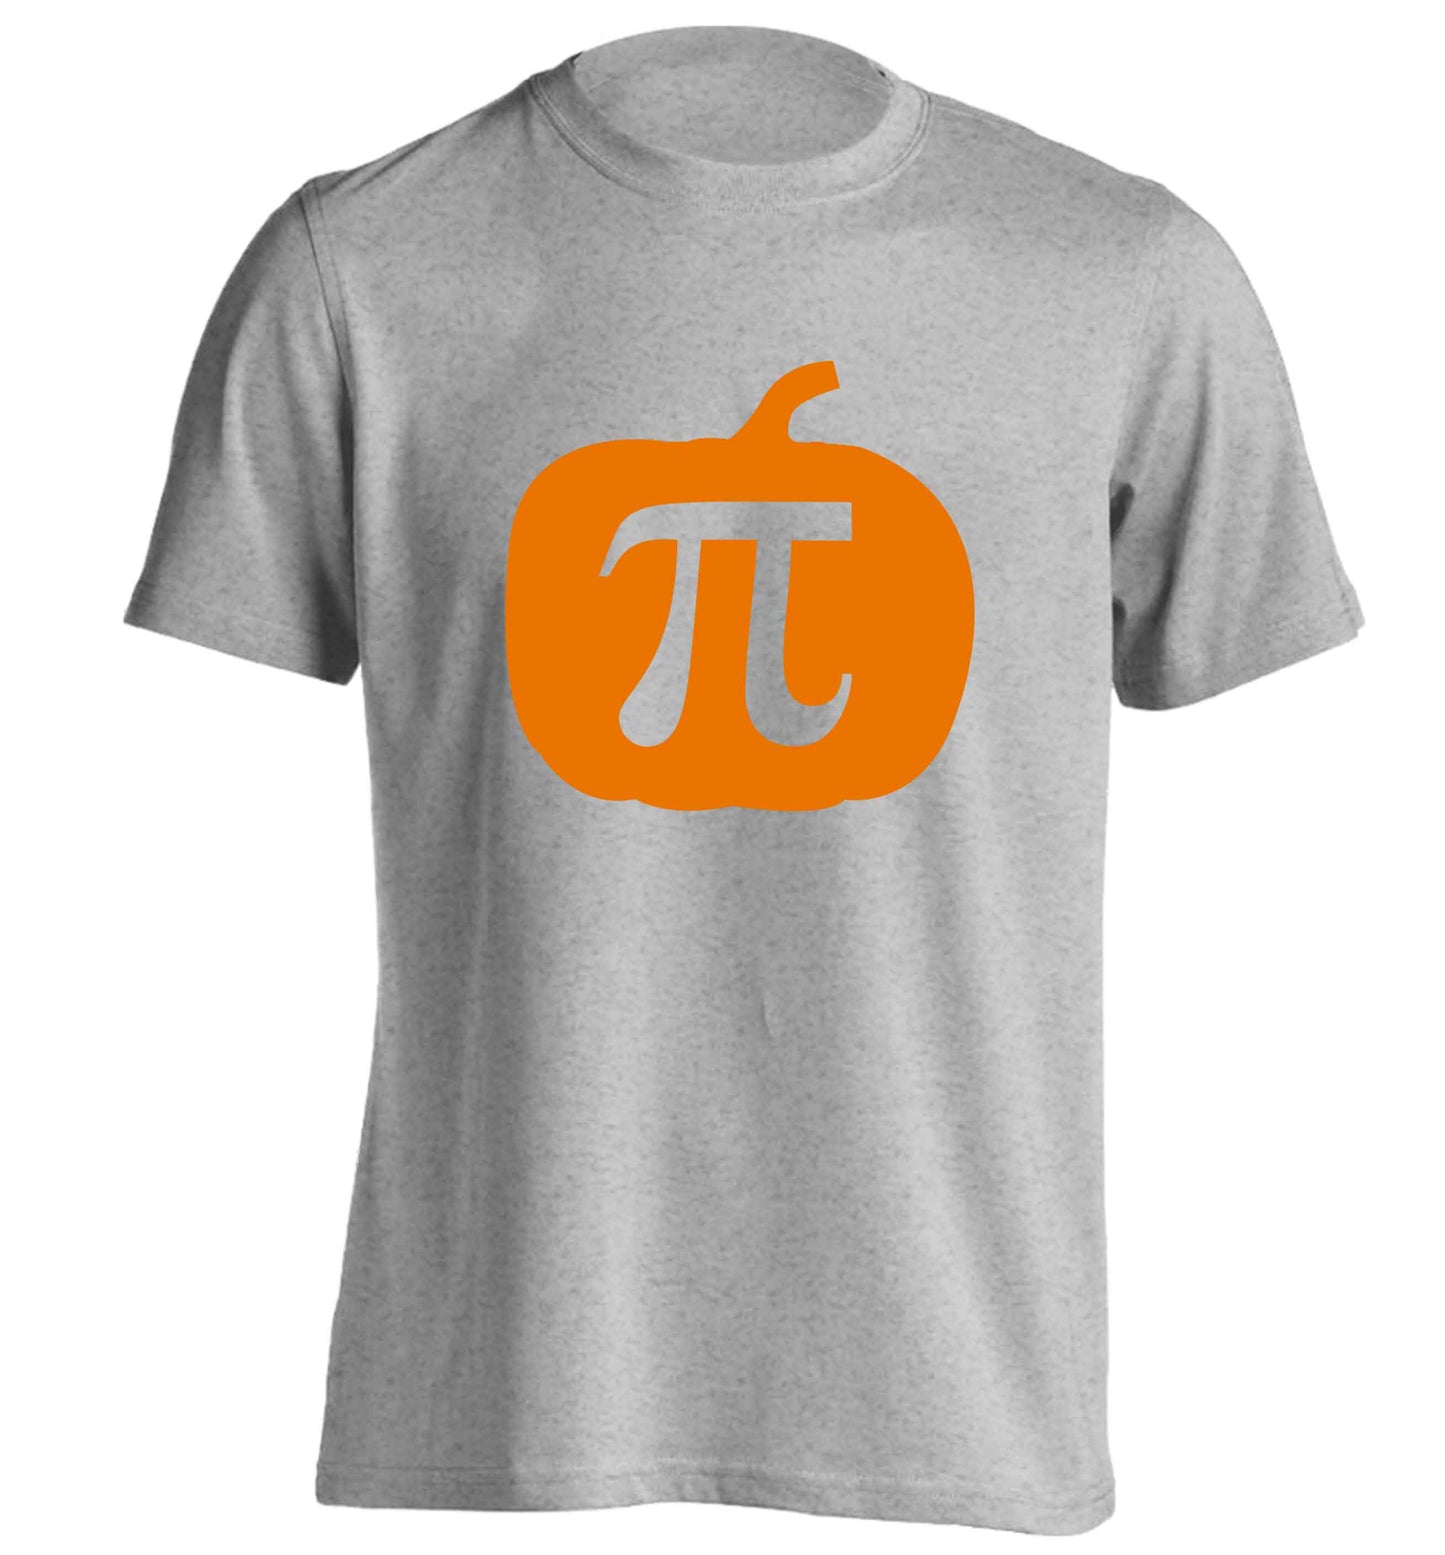 Pumpkin Pie adults unisex grey Tshirt 2XL